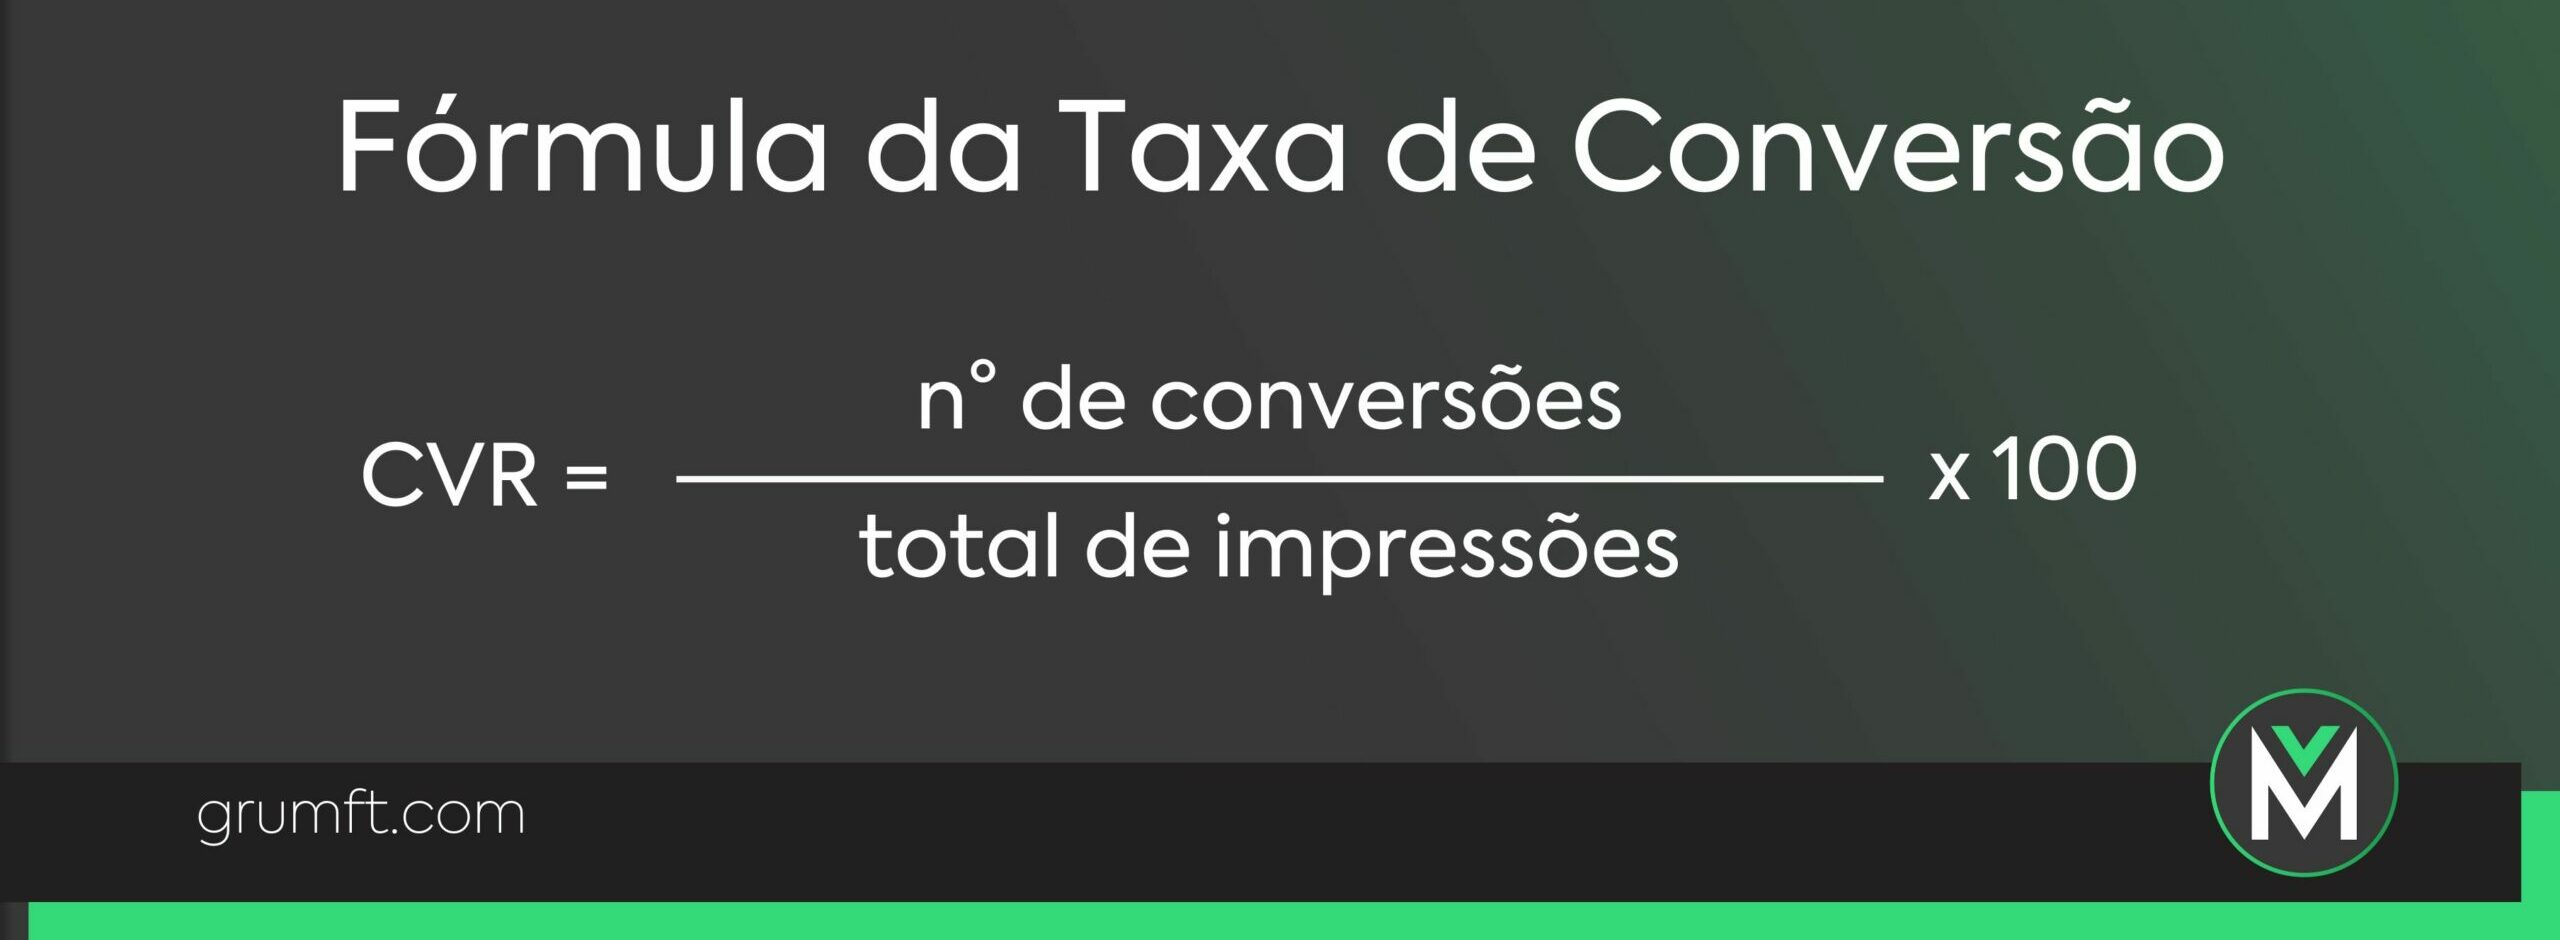 Fórmula da Taxa de Conversão